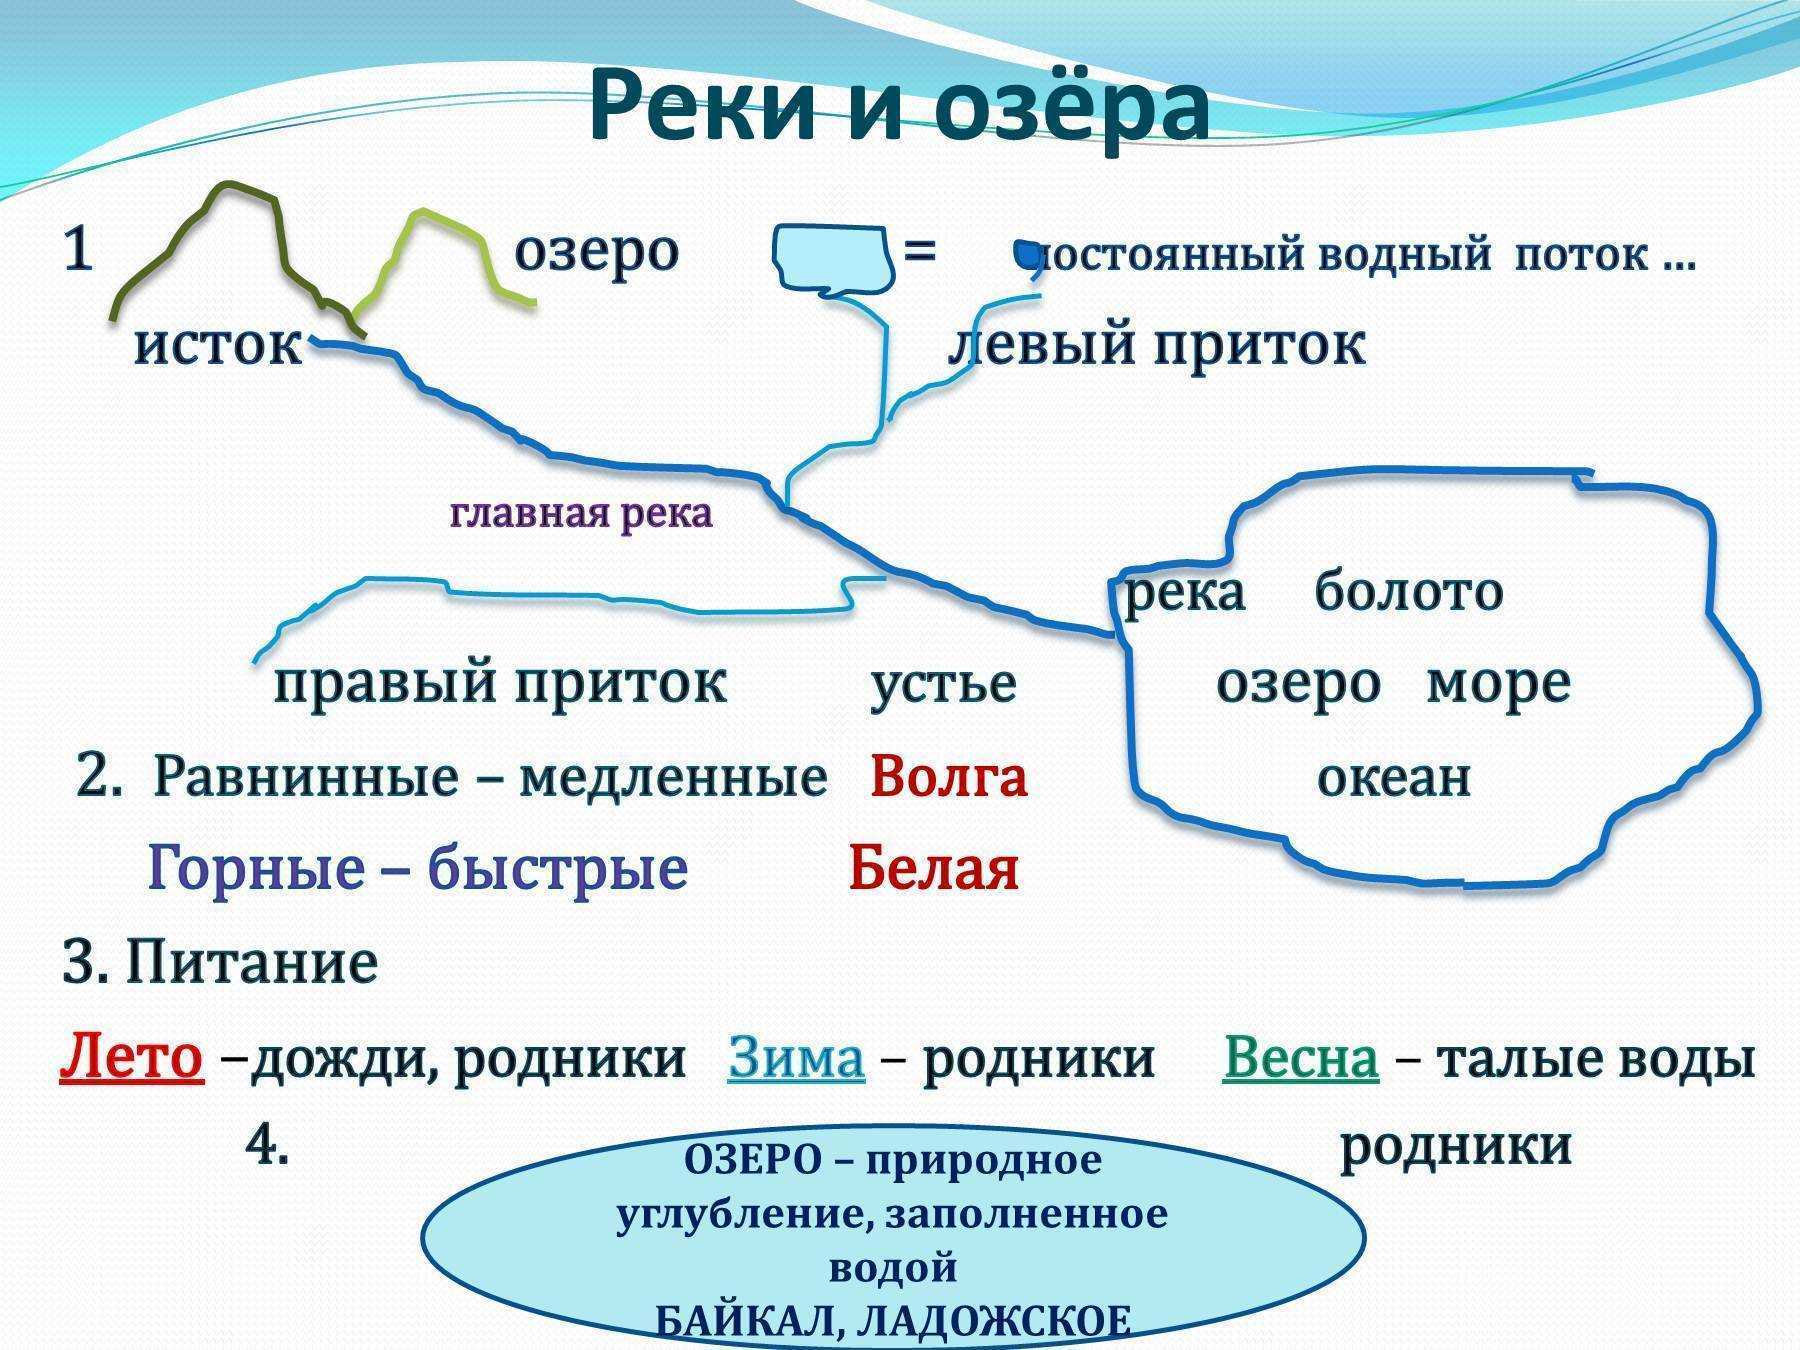 Тема реки и озера. Конспект реки России. Воды суши реки. Воды суши реки и озера. Реки и озера география.